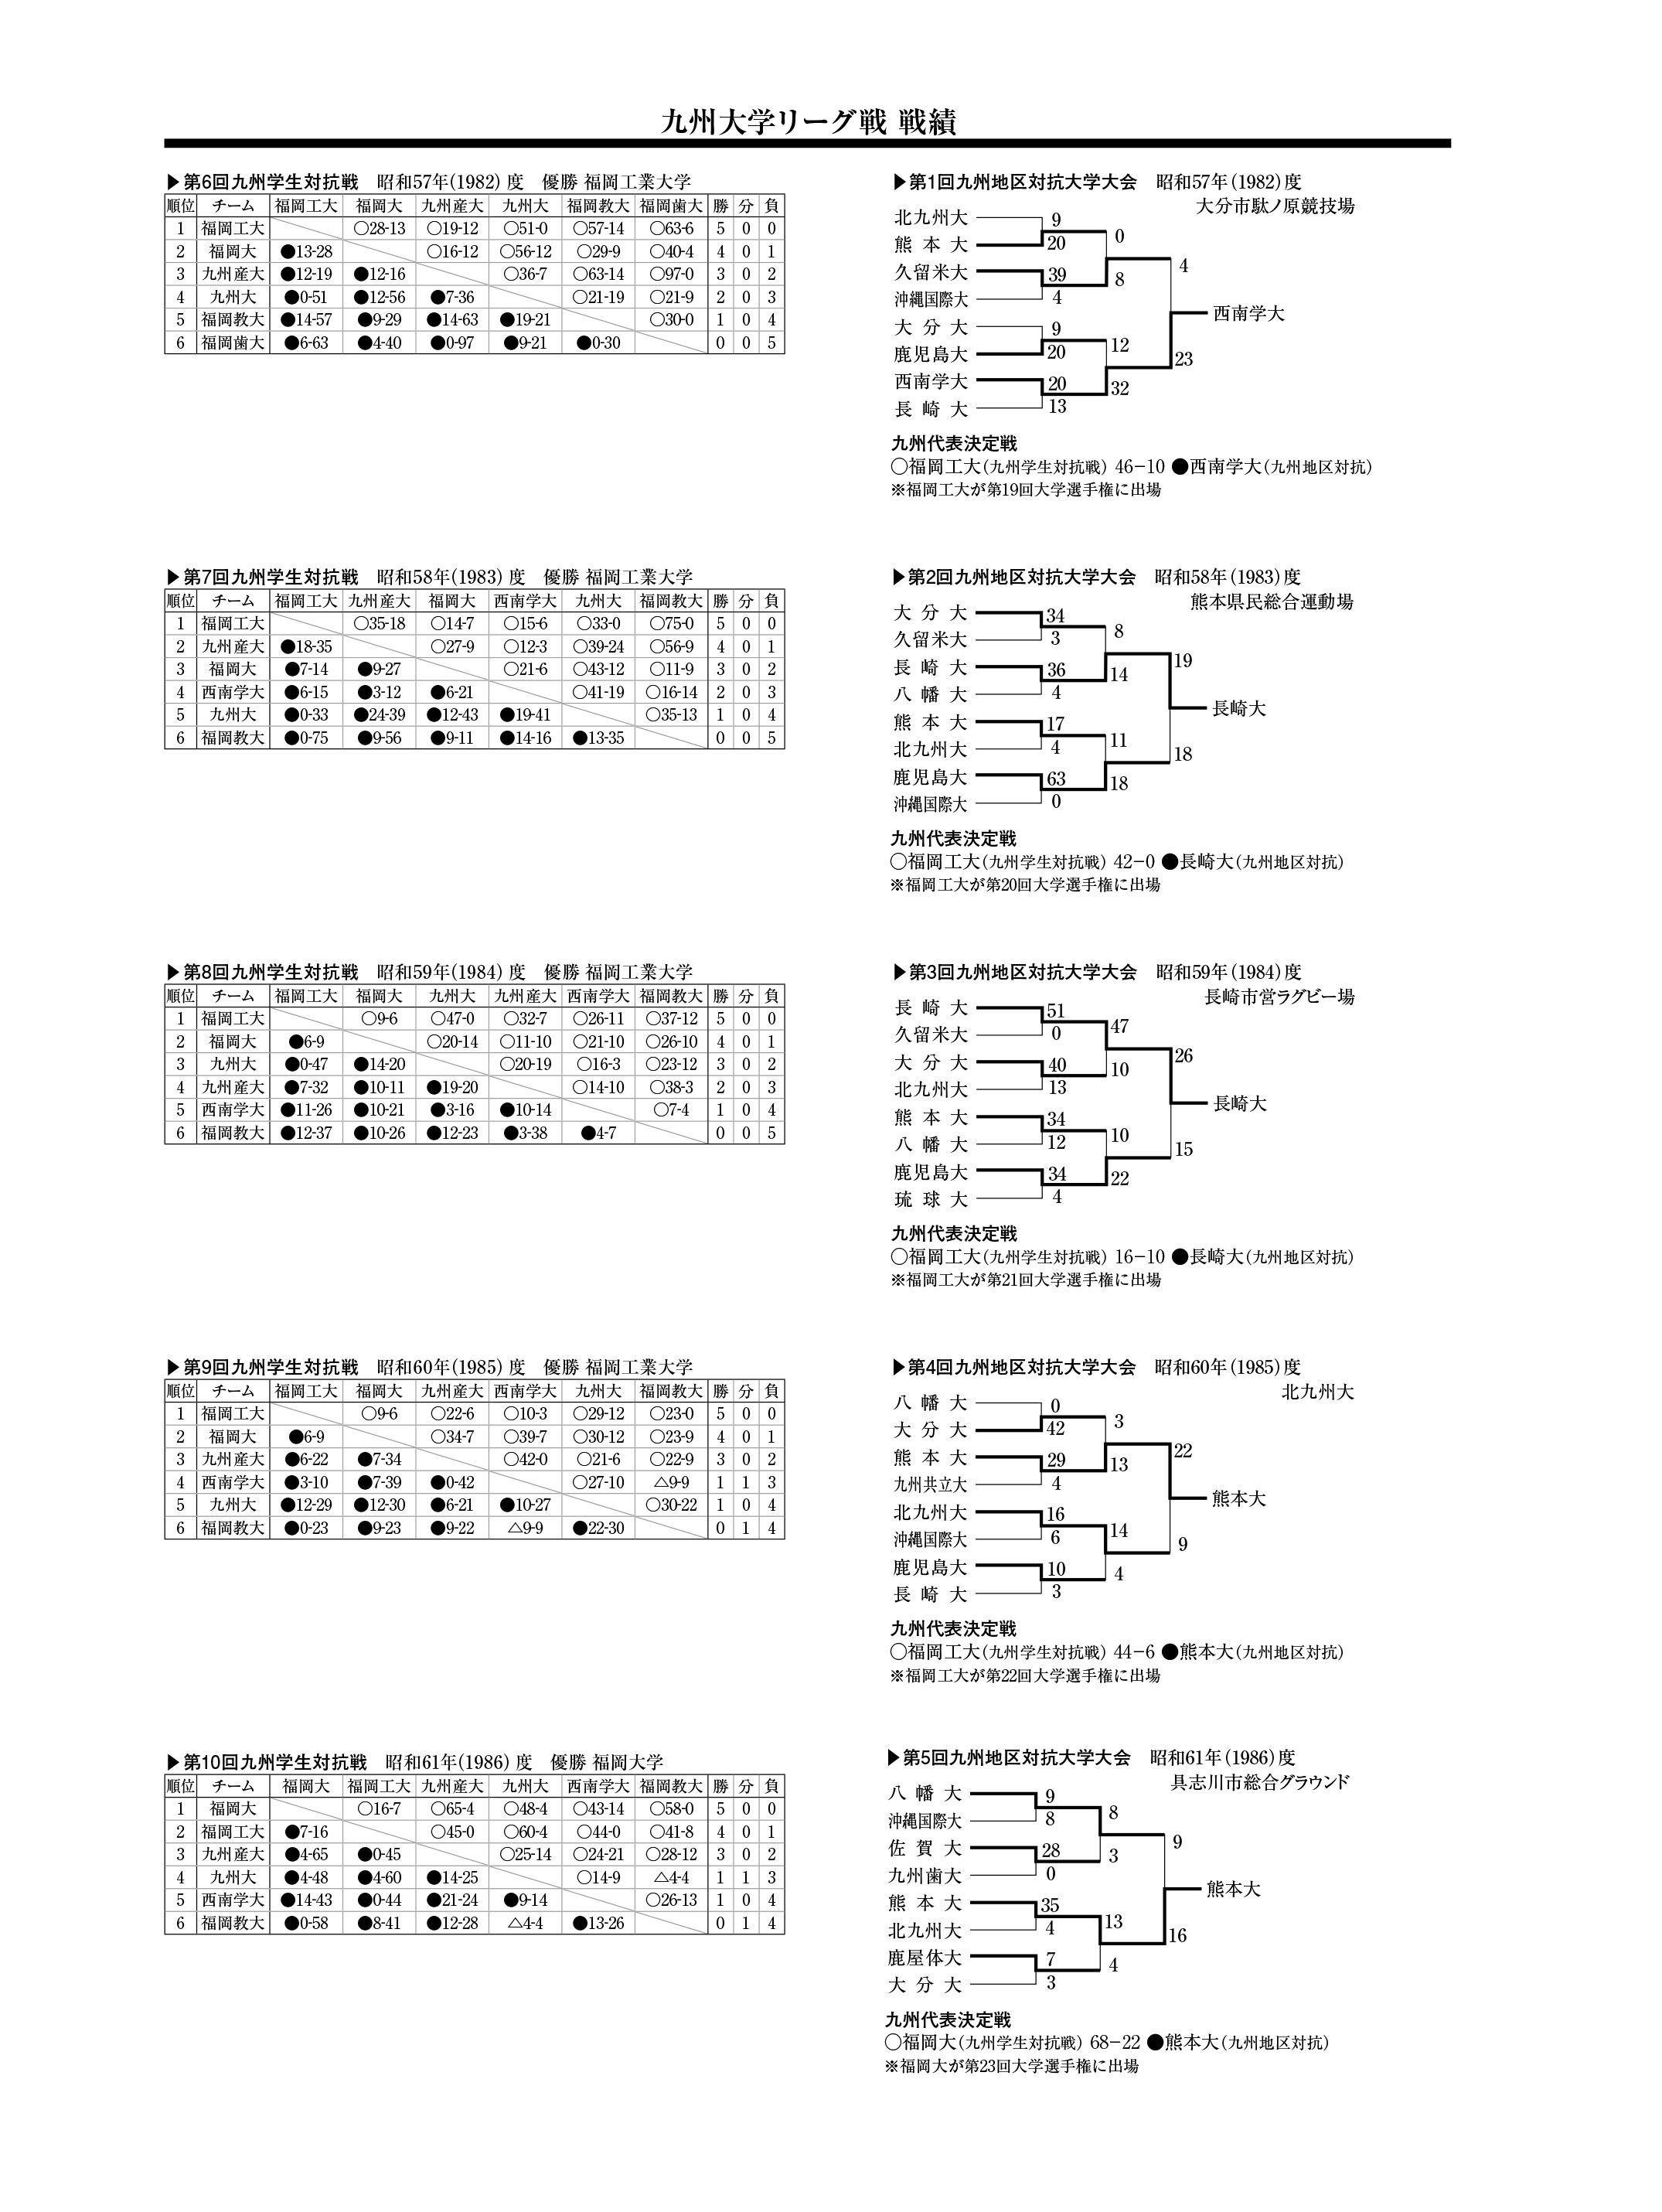 九州大学リーグ戦(昭和57年度～61年度)戦績一覧